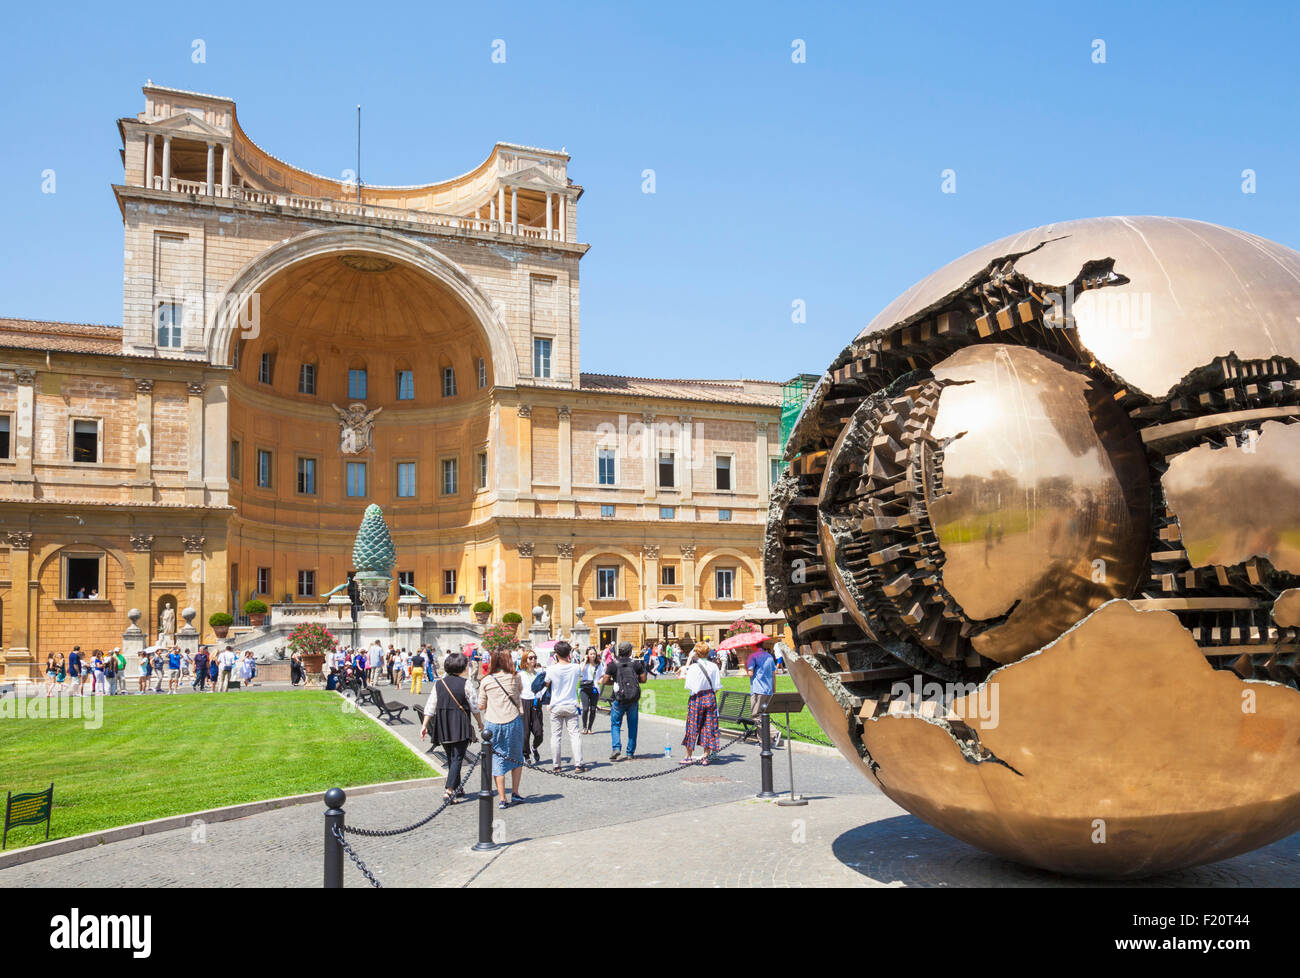 Sfera sfera di Pomodoro Cortile della Pigna all'interno del Museo del Vaticano Città del Vaticano Roma Italia roma lazio EU Europe Foto Stock